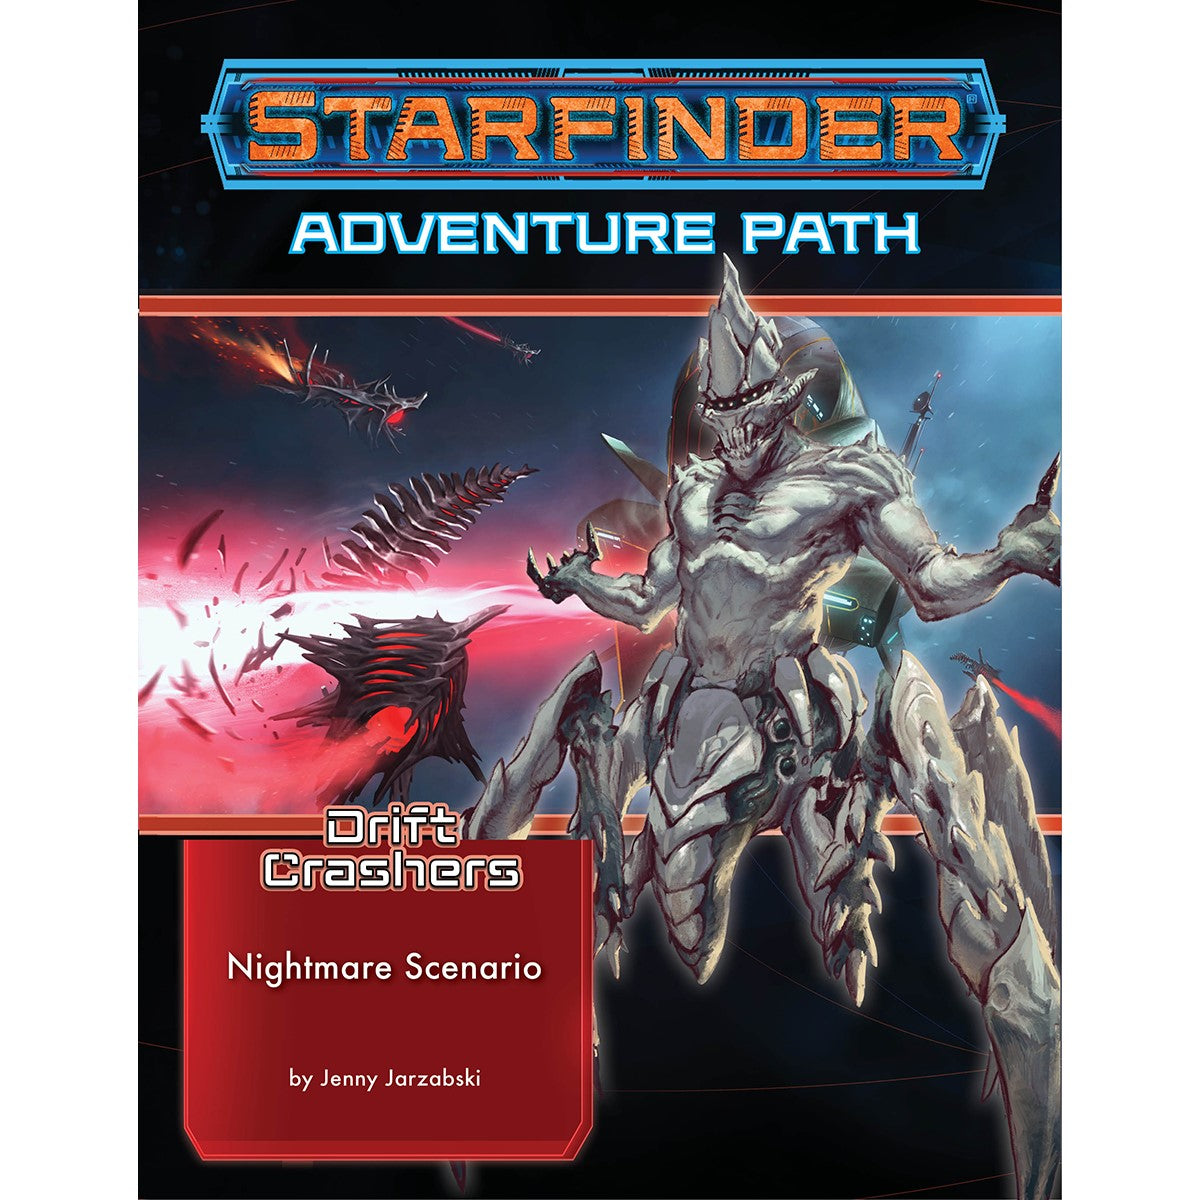 Starfinder RPG Adventure Path Drift Crashers #2 Nightmare Scenario